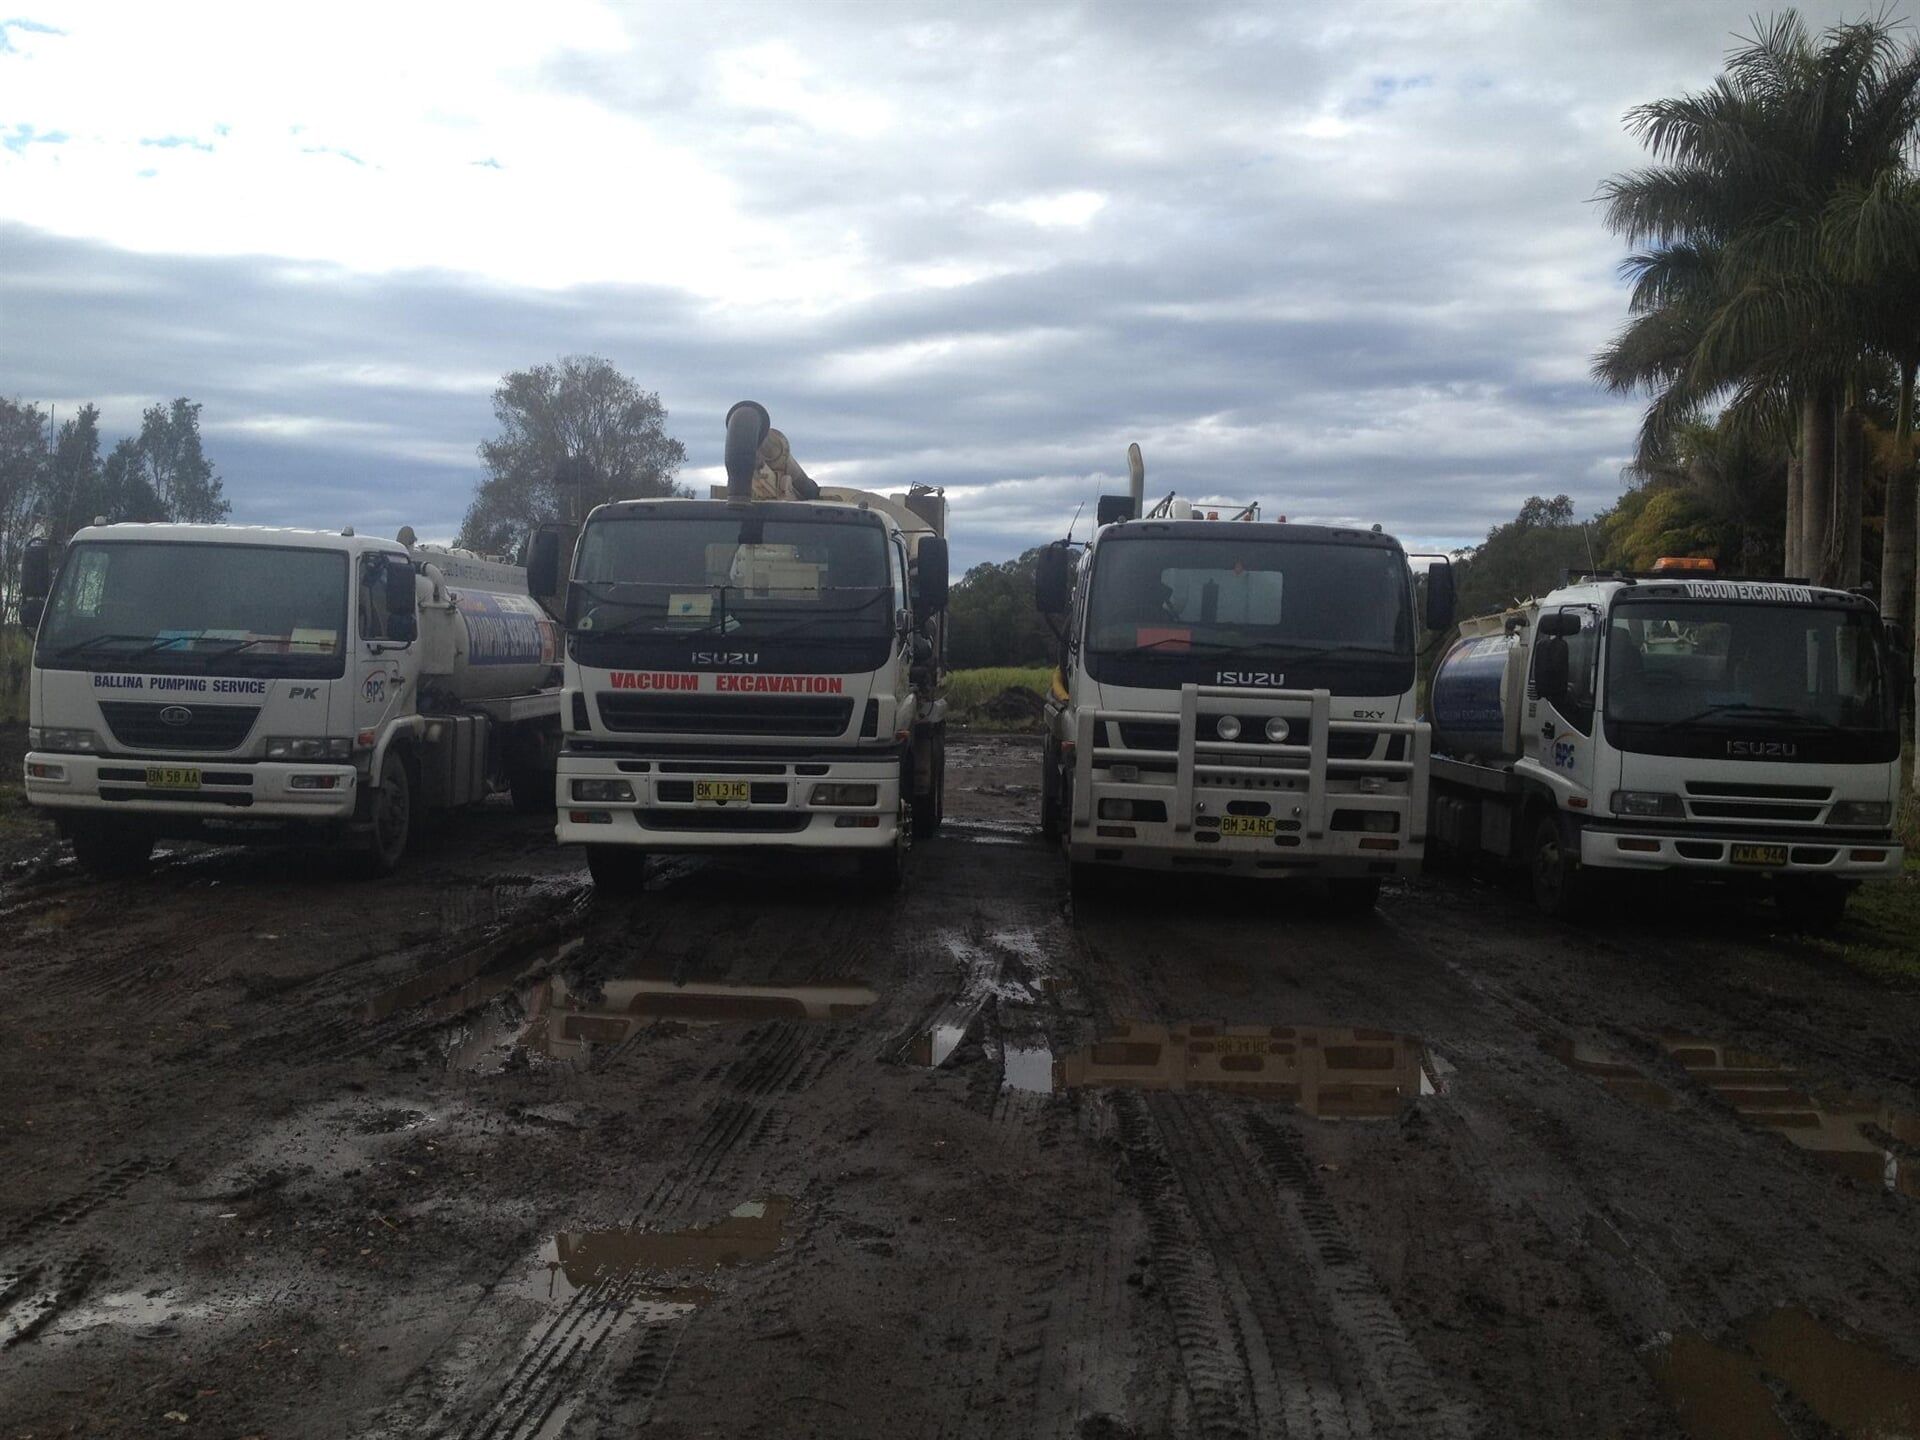 Service trucks - Waste Removal in Pimlico, NSW